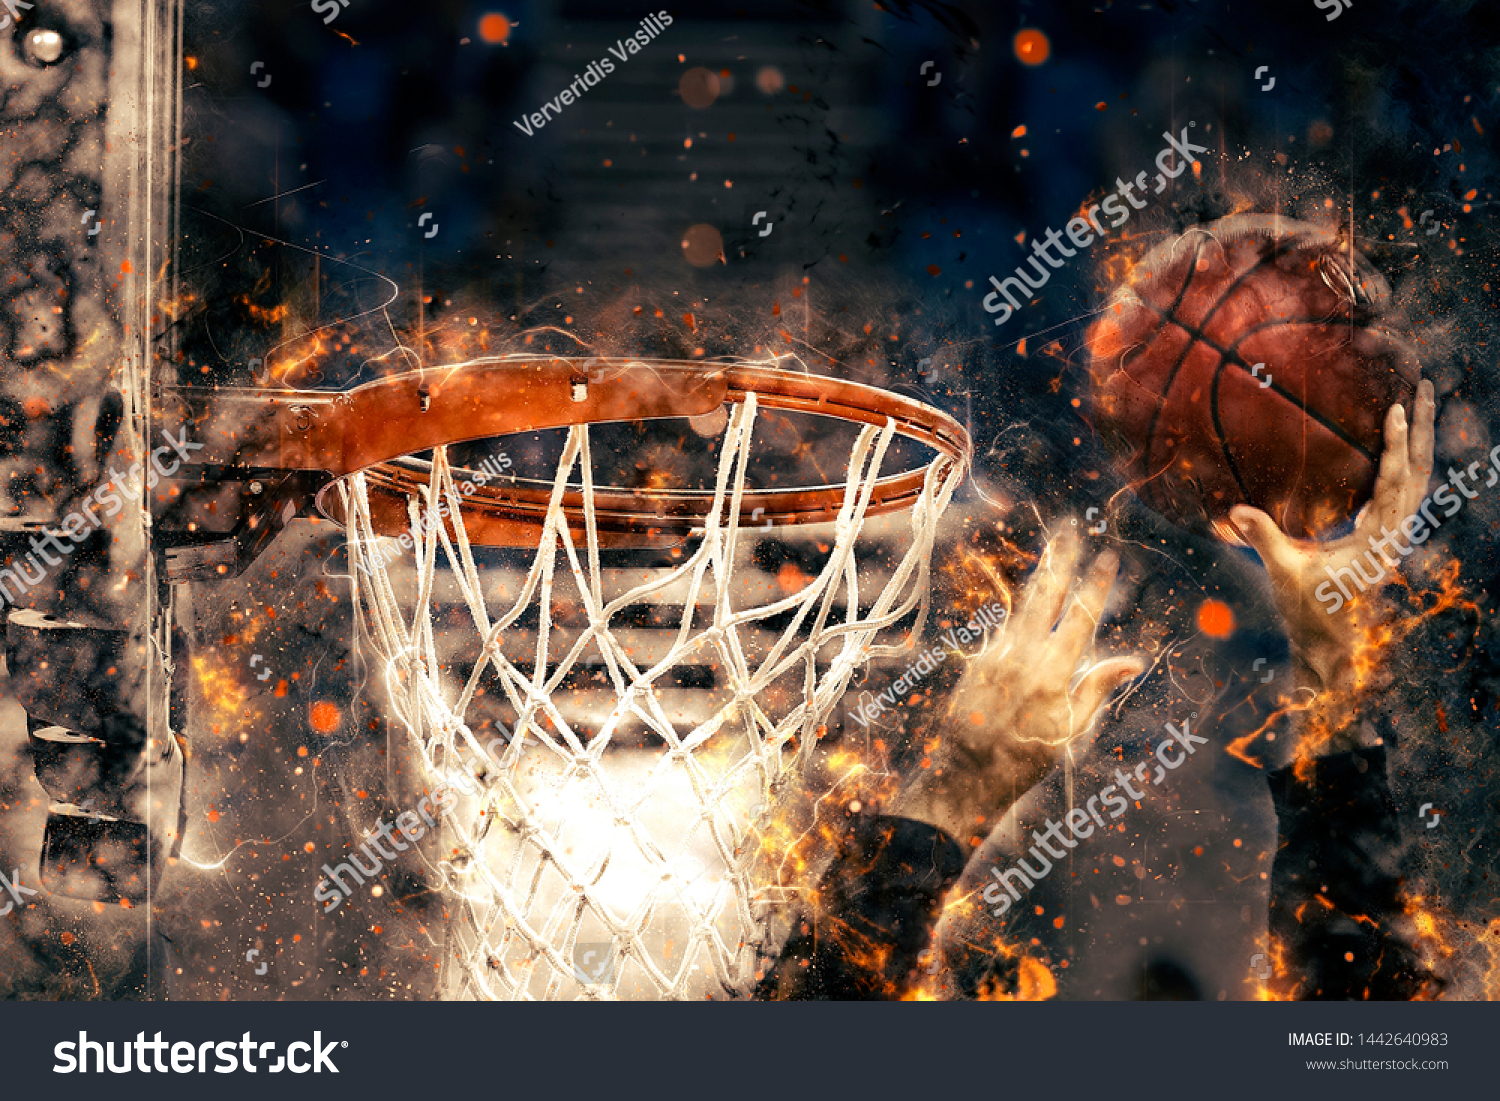 バスケットボールの選手の手がバスケットにボールを投げる 火の効果 のイラスト素材